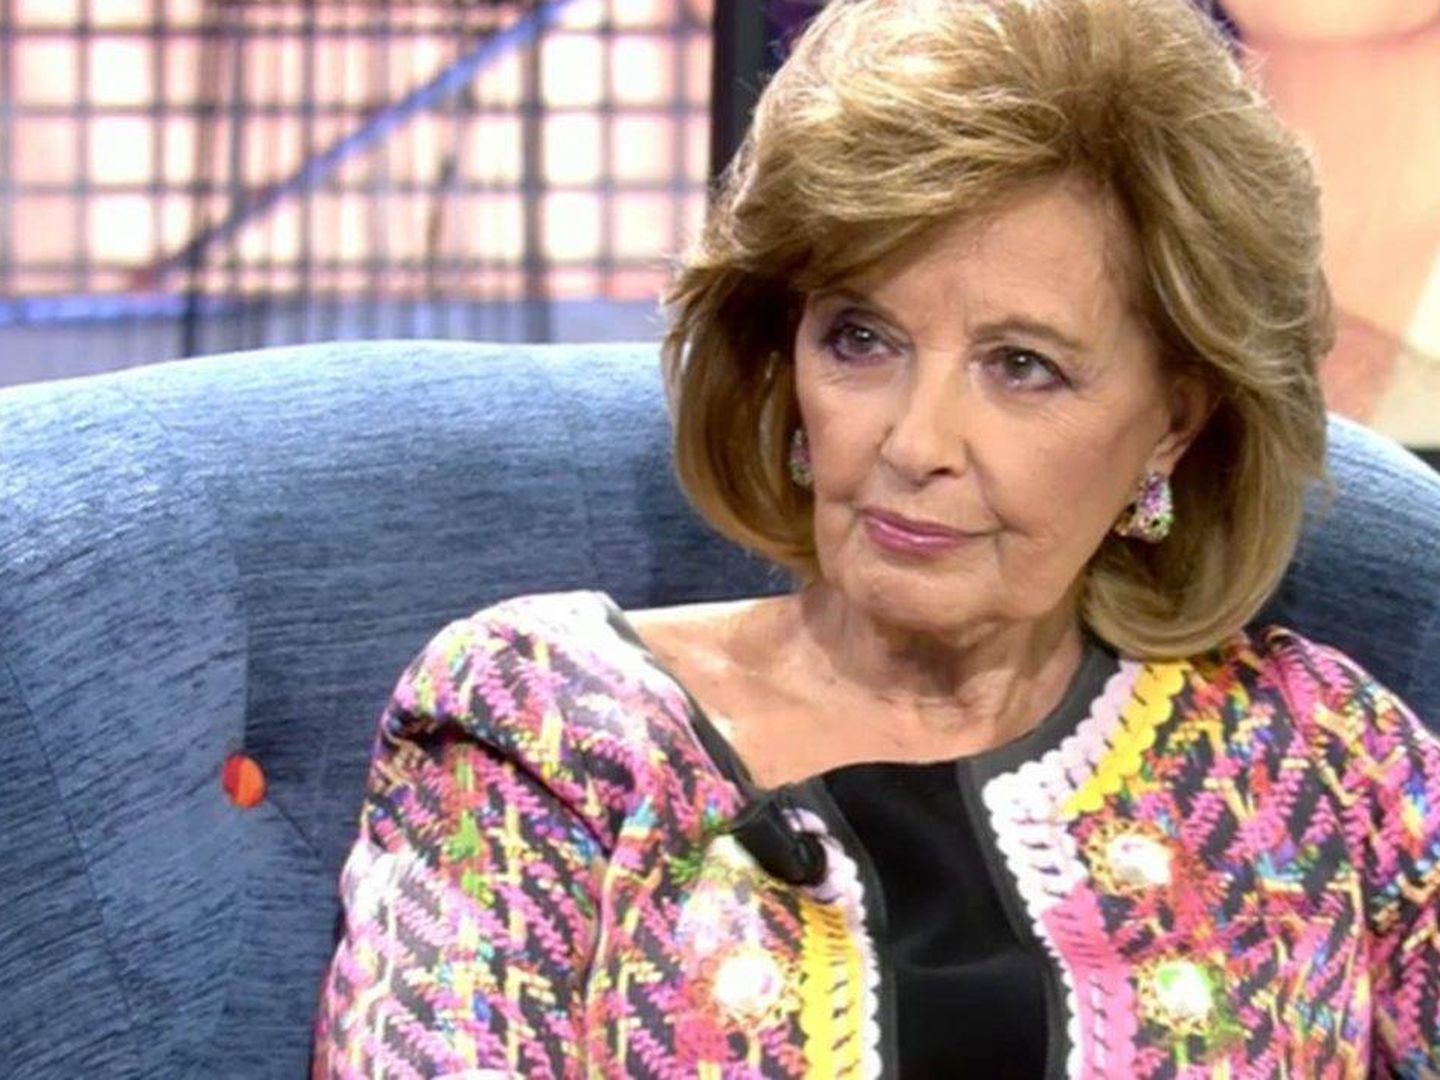  María Teresa Campos. (Mediaset)